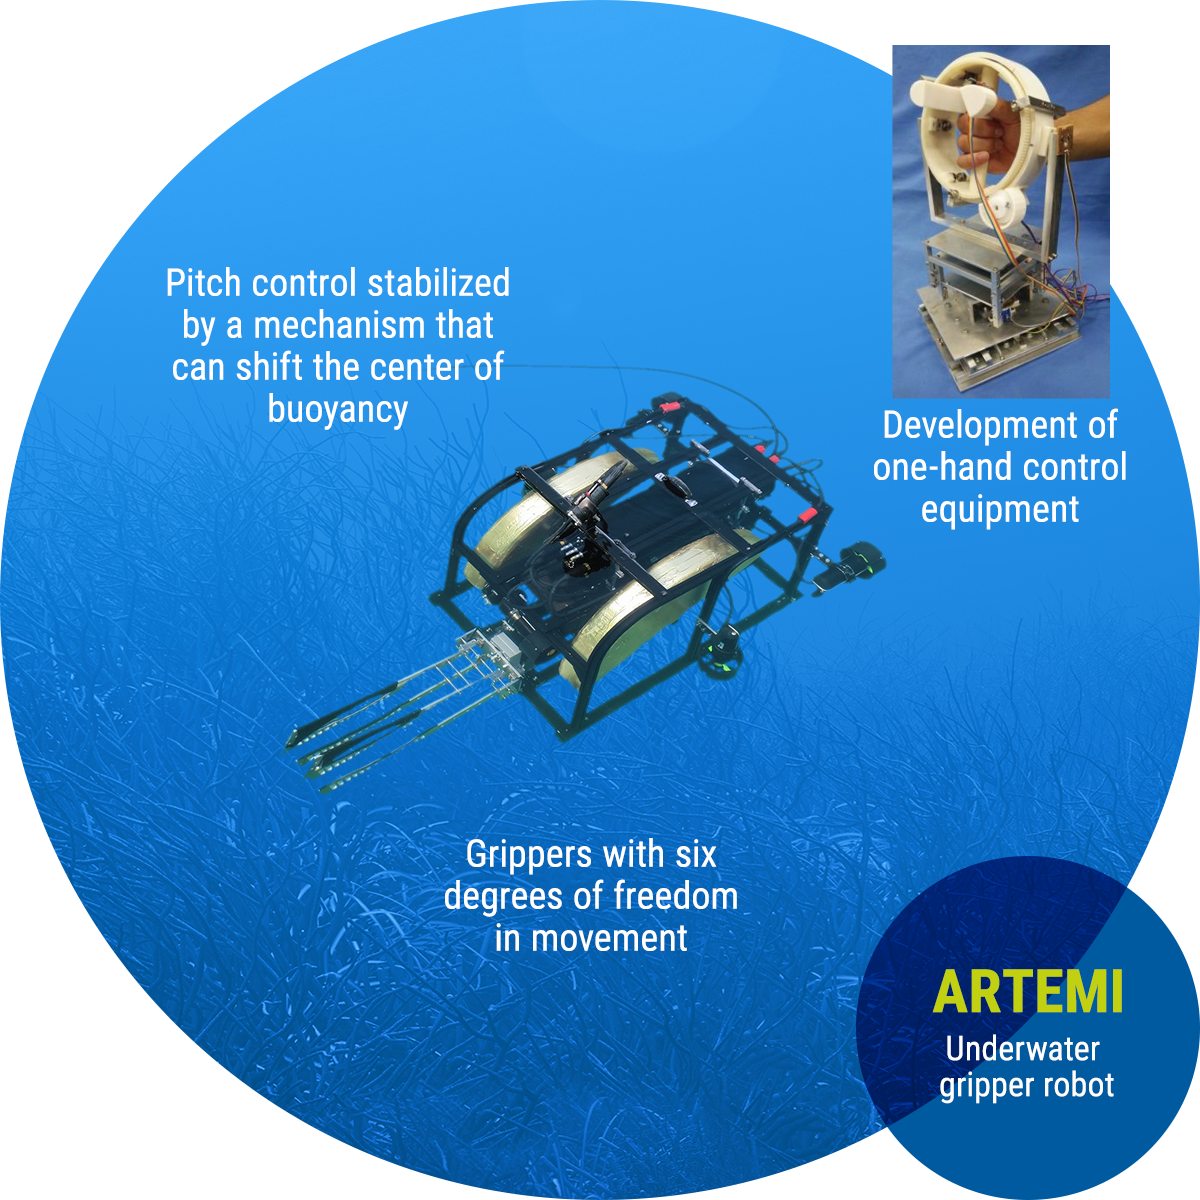 ARTEMI: Underwater gripper robot